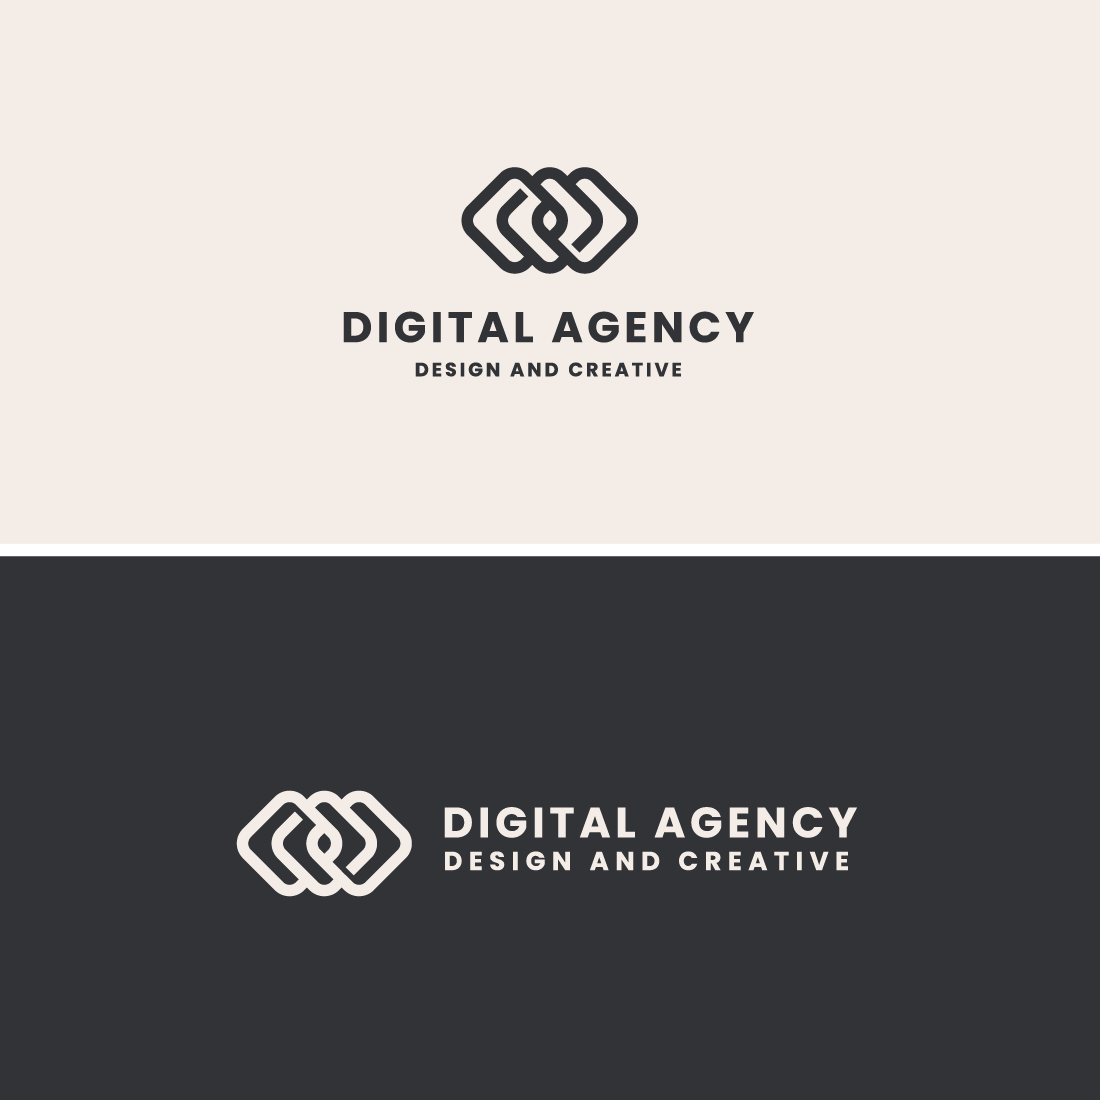 Digital Agency Branding Logo cover image.